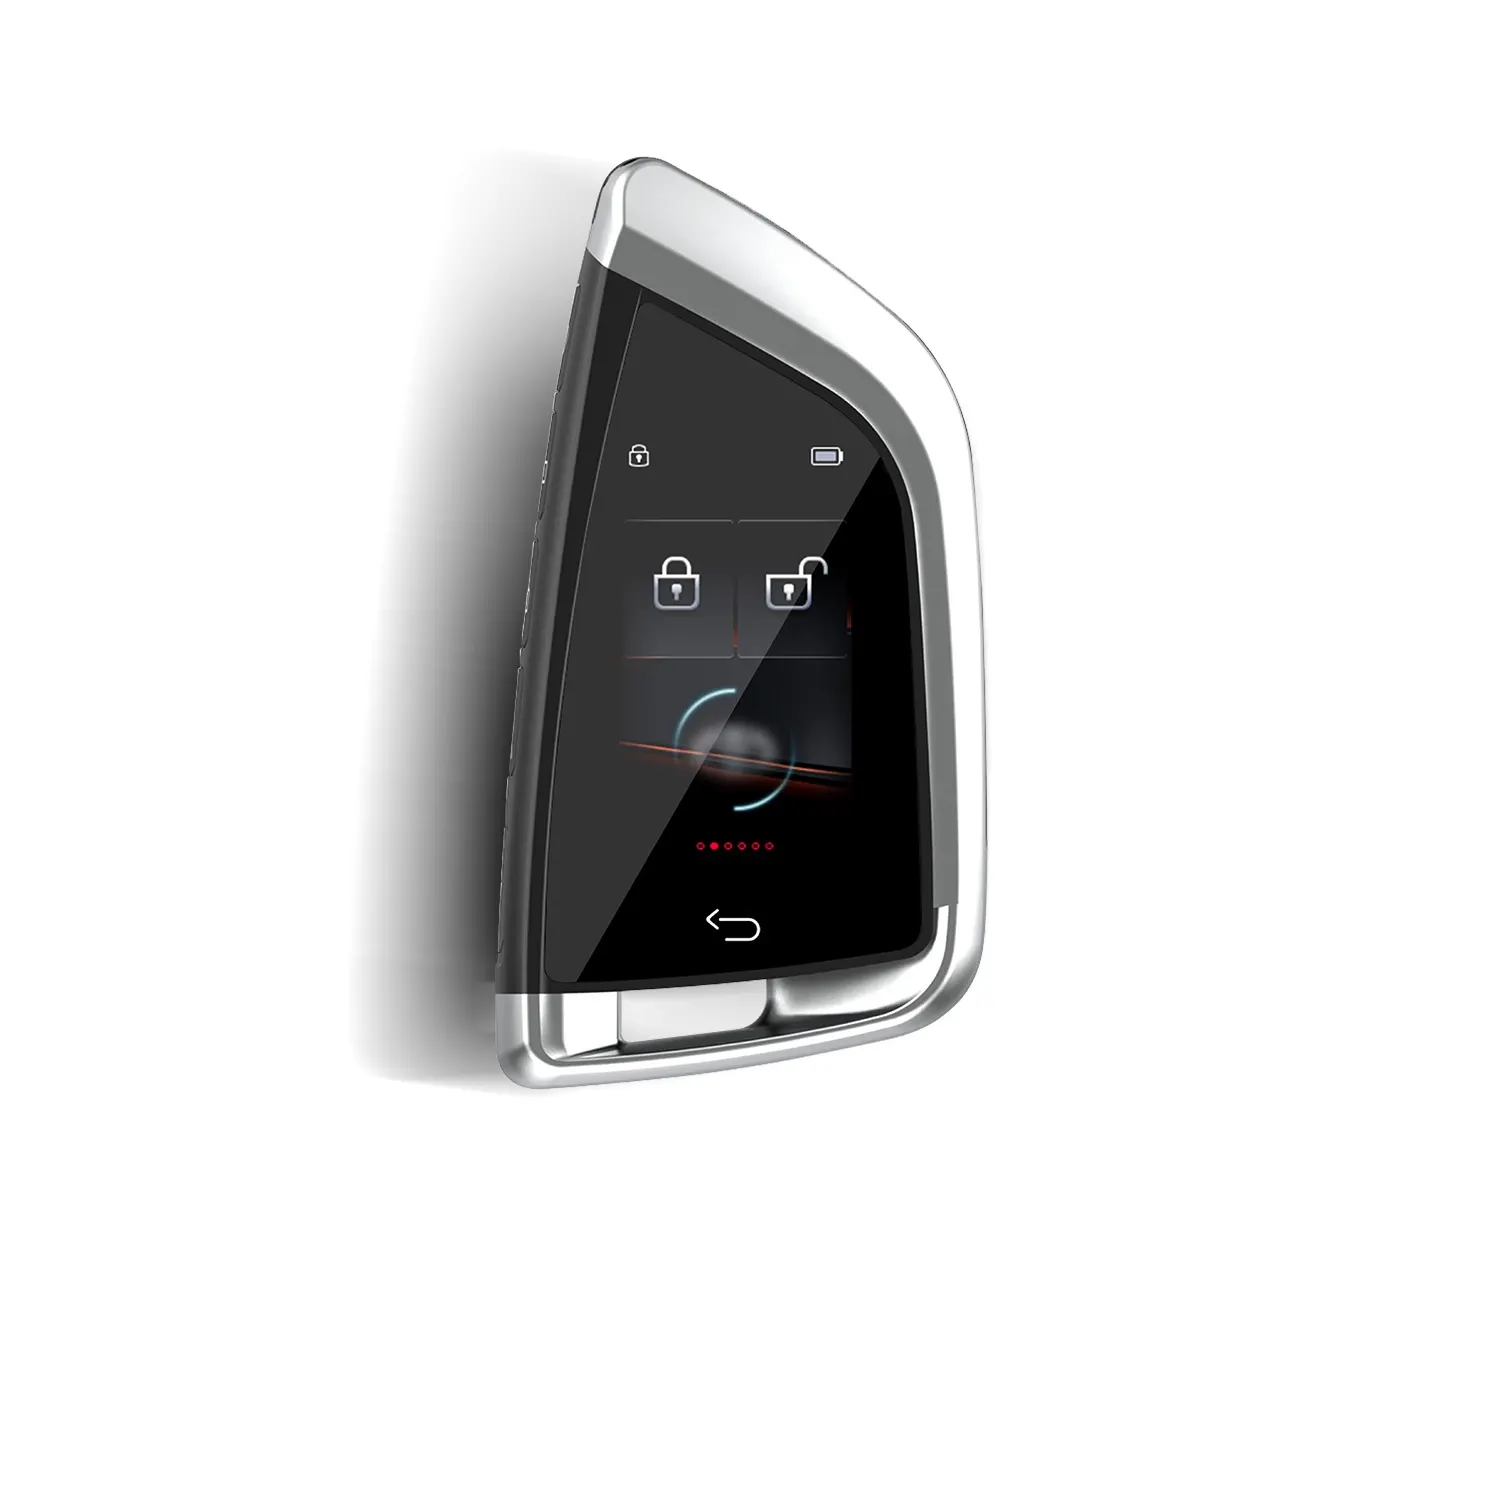 Accessoires de voiture télécommande de voiture clés intelligentes pke verrouillage automatique déverrouiller voiture lcd tactile clé numérique pour nissan pour bmw